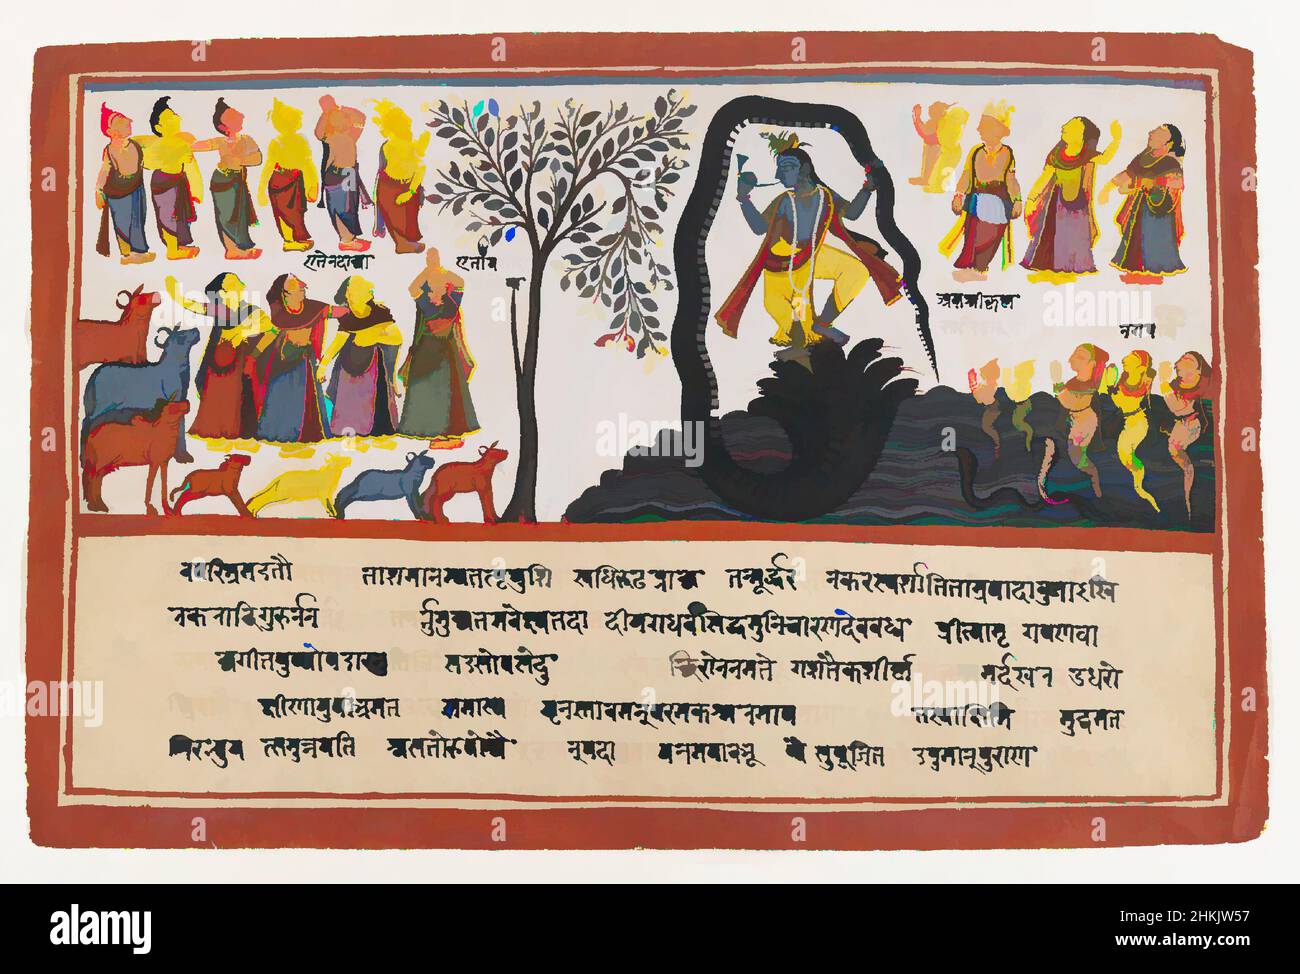 L'art inspiré par Krishna conquiert le serpent Kaliya, page d'une série de Bhagavata Purana dispersée, Indien, aquarelle opaque et or sur papier, Odisha, Orissa, Inde, ca. 1775, feuille: 9 3/4 x 14 5/8 po., 24,8 x 37,1 cm, Bhagavata Purana, vaches, danse, Or, Gopis, Herd, Horn, Kaliya, Classic œuvres modernisées par Artotop avec une touche de modernité. Formes, couleur et valeur, impact visuel accrocheur sur l'art émotions par la liberté d'œuvres d'art d'une manière contemporaine. Un message intemporel qui cherche une nouvelle direction créative. Artistes qui se tournent vers le support numérique et créent le NFT Artotop Banque D'Images